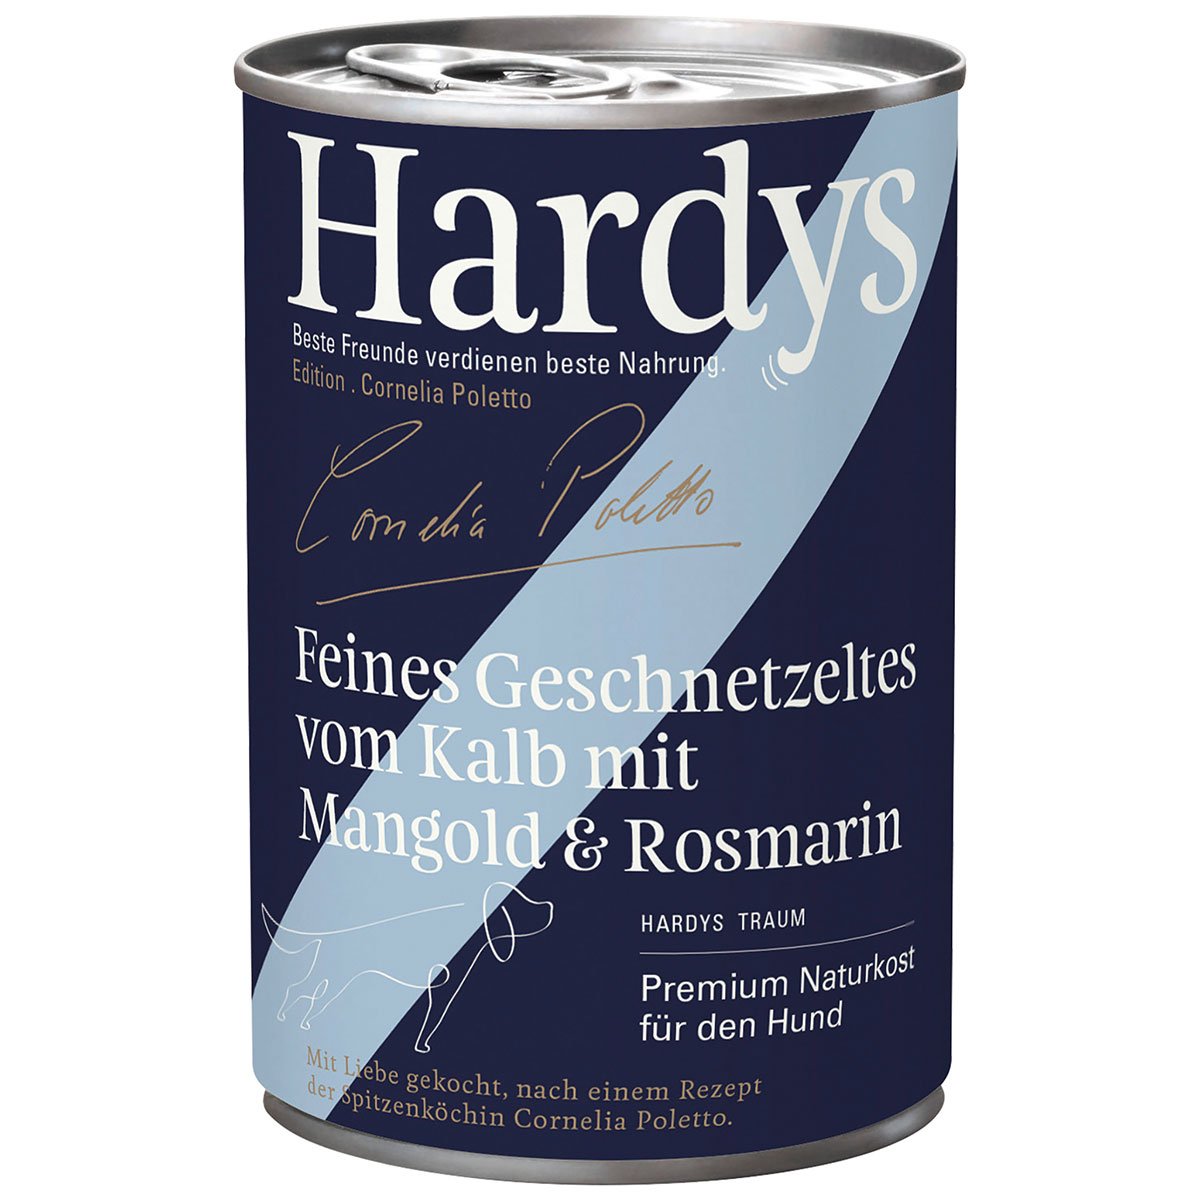 Hardys Ed. Cornelia Poletto Feines Geschnetzeltes vom Kalb mit Mangold & Rosmarin 6x400g von Hardys